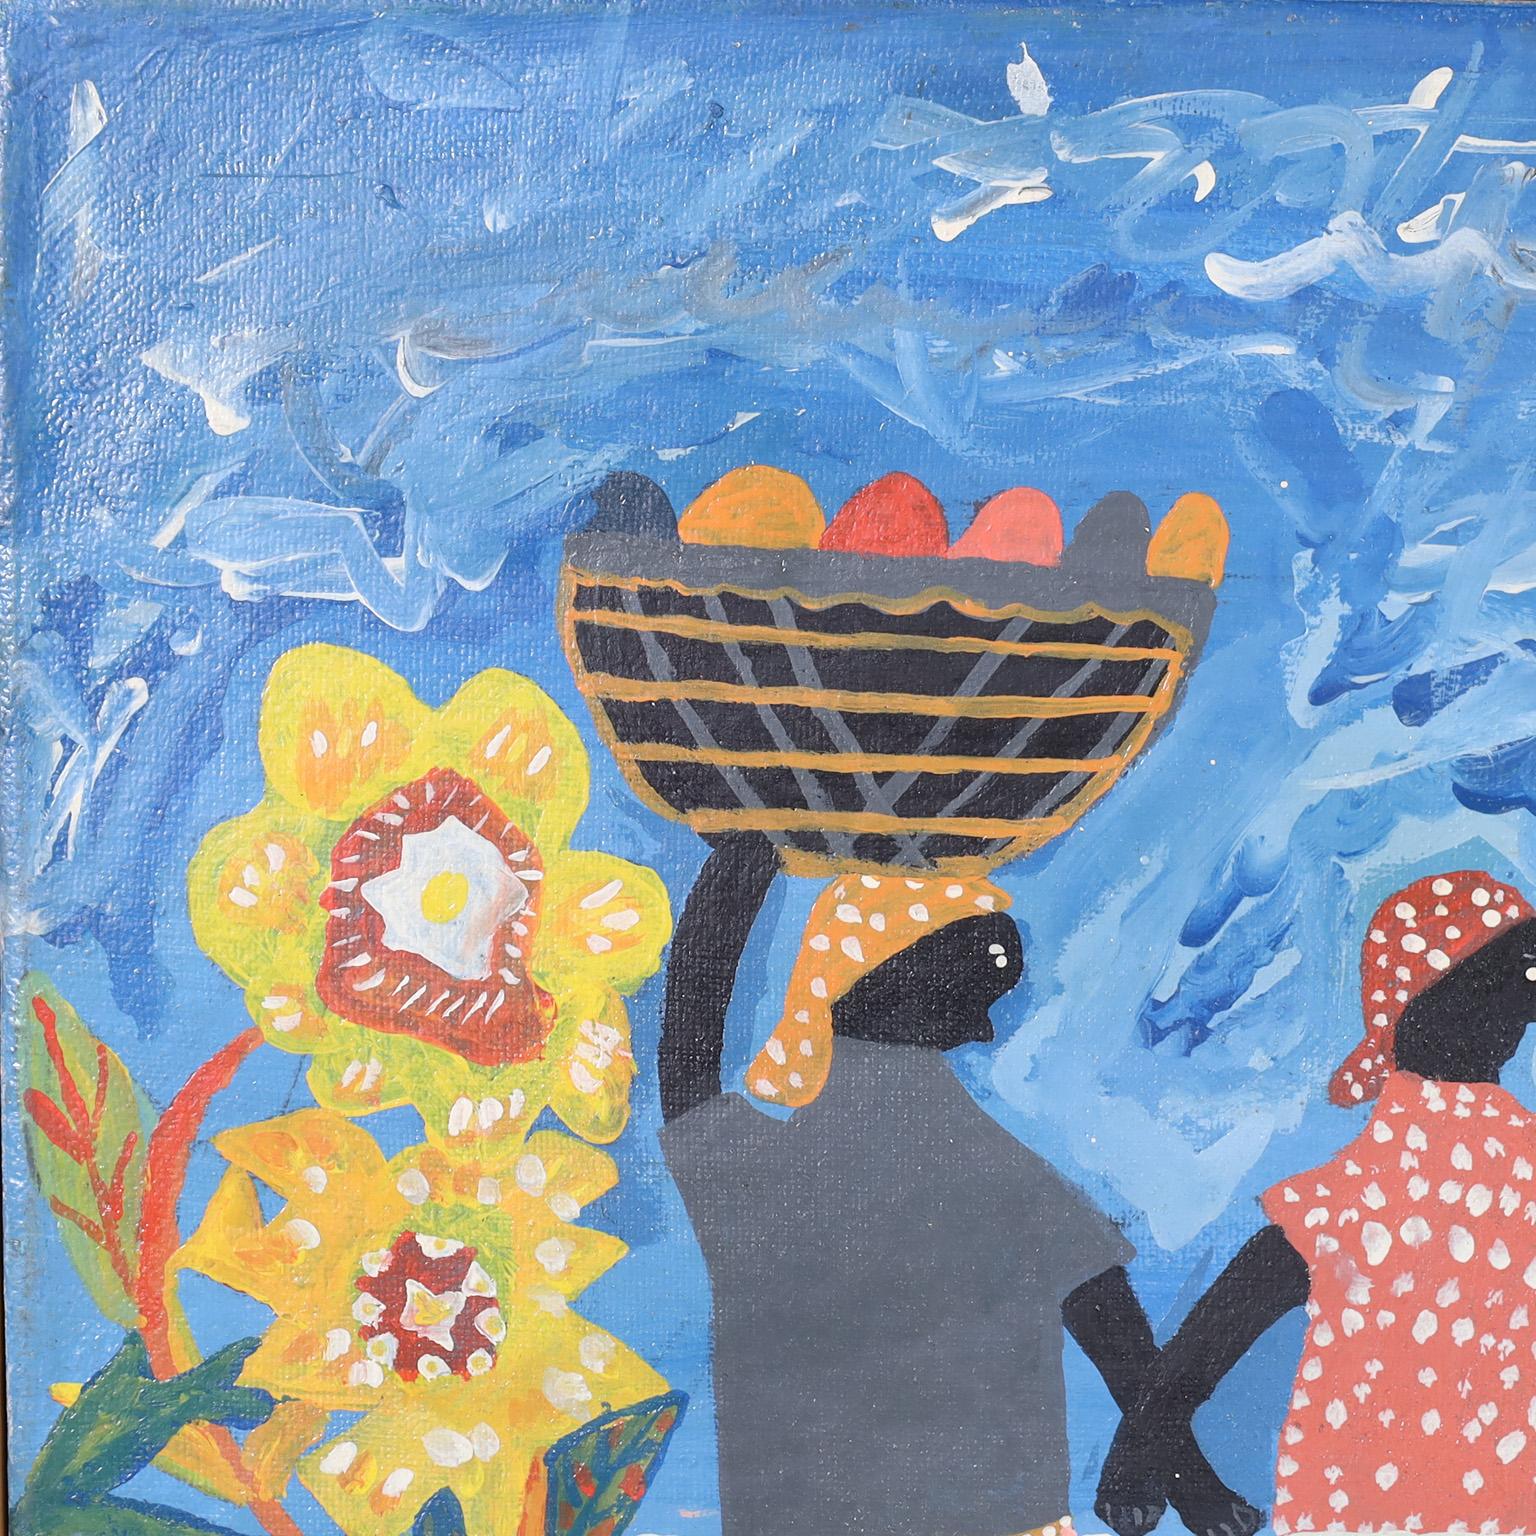 Charmante peinture acrylique sur toile d'un groupe de personnages colorés dans un décor tropical exécutée dans un style naïf. Signée Osnel en bas à droite et présentée dans son cadre en bois d'origine.